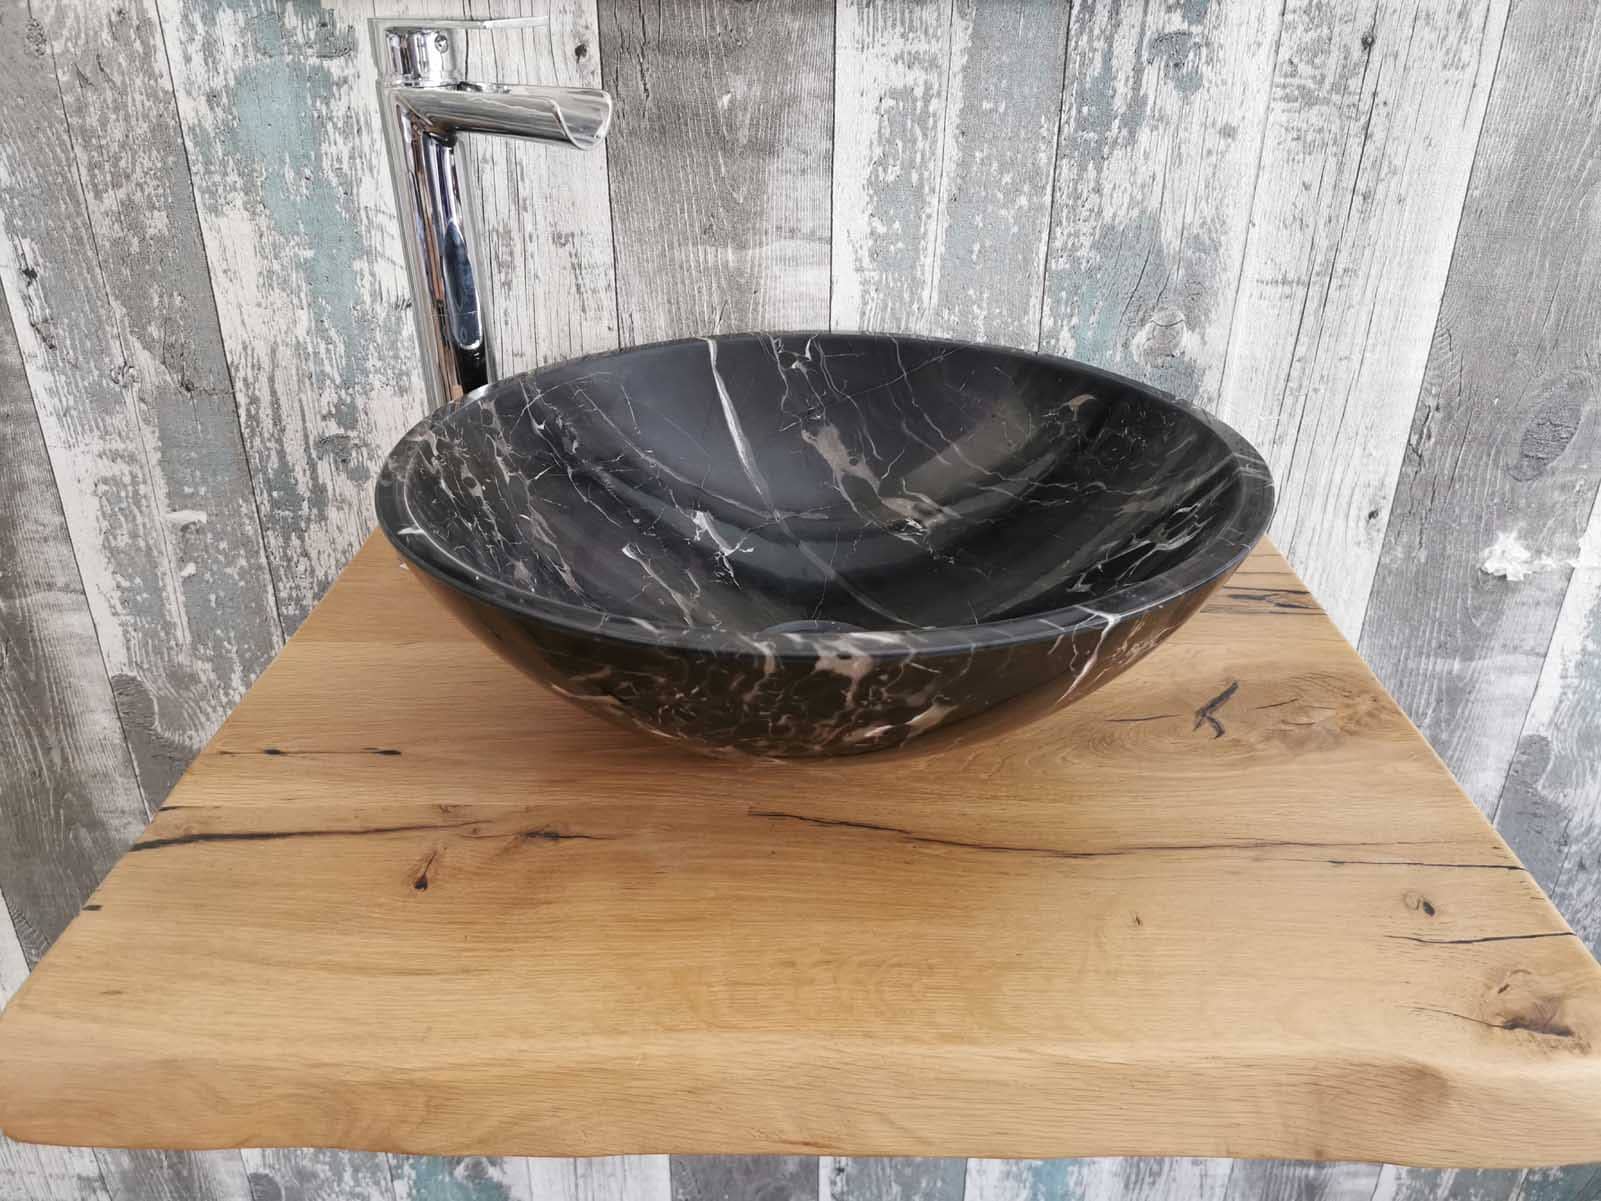 Mensola top da bagno in legno antico con lavabo